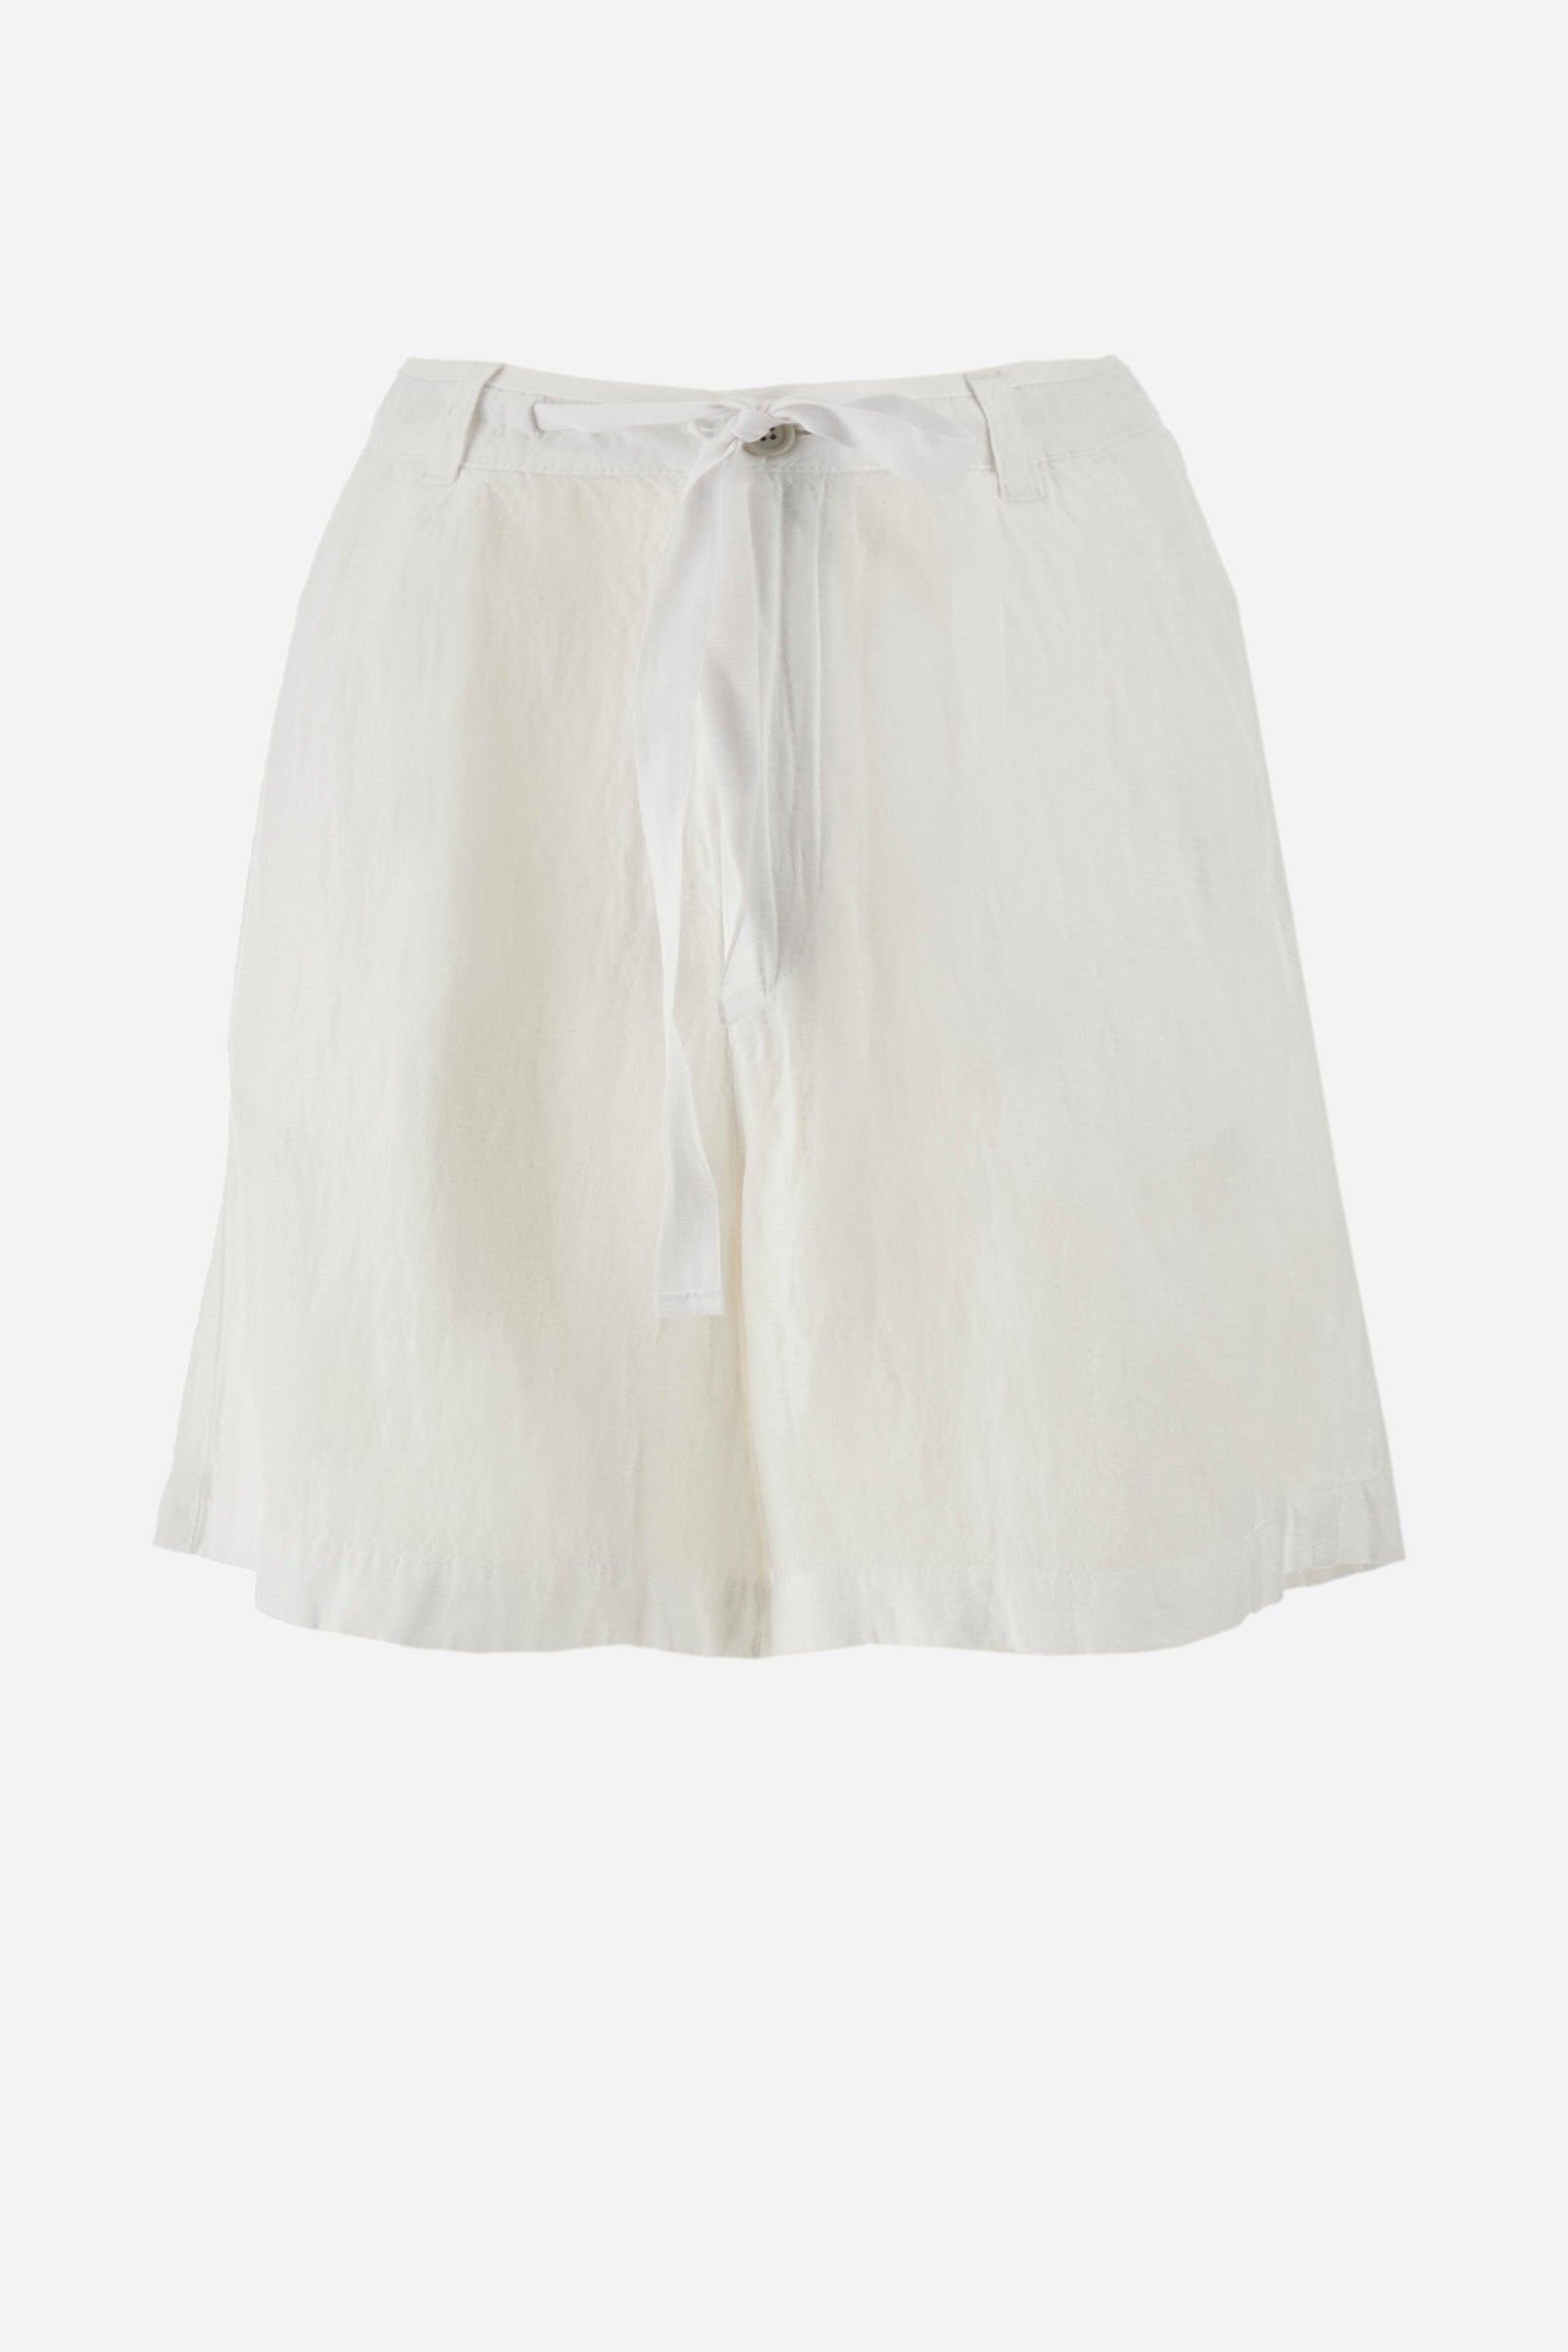 Regular-fit Bermuda shorts in a linen blend - Yasmean